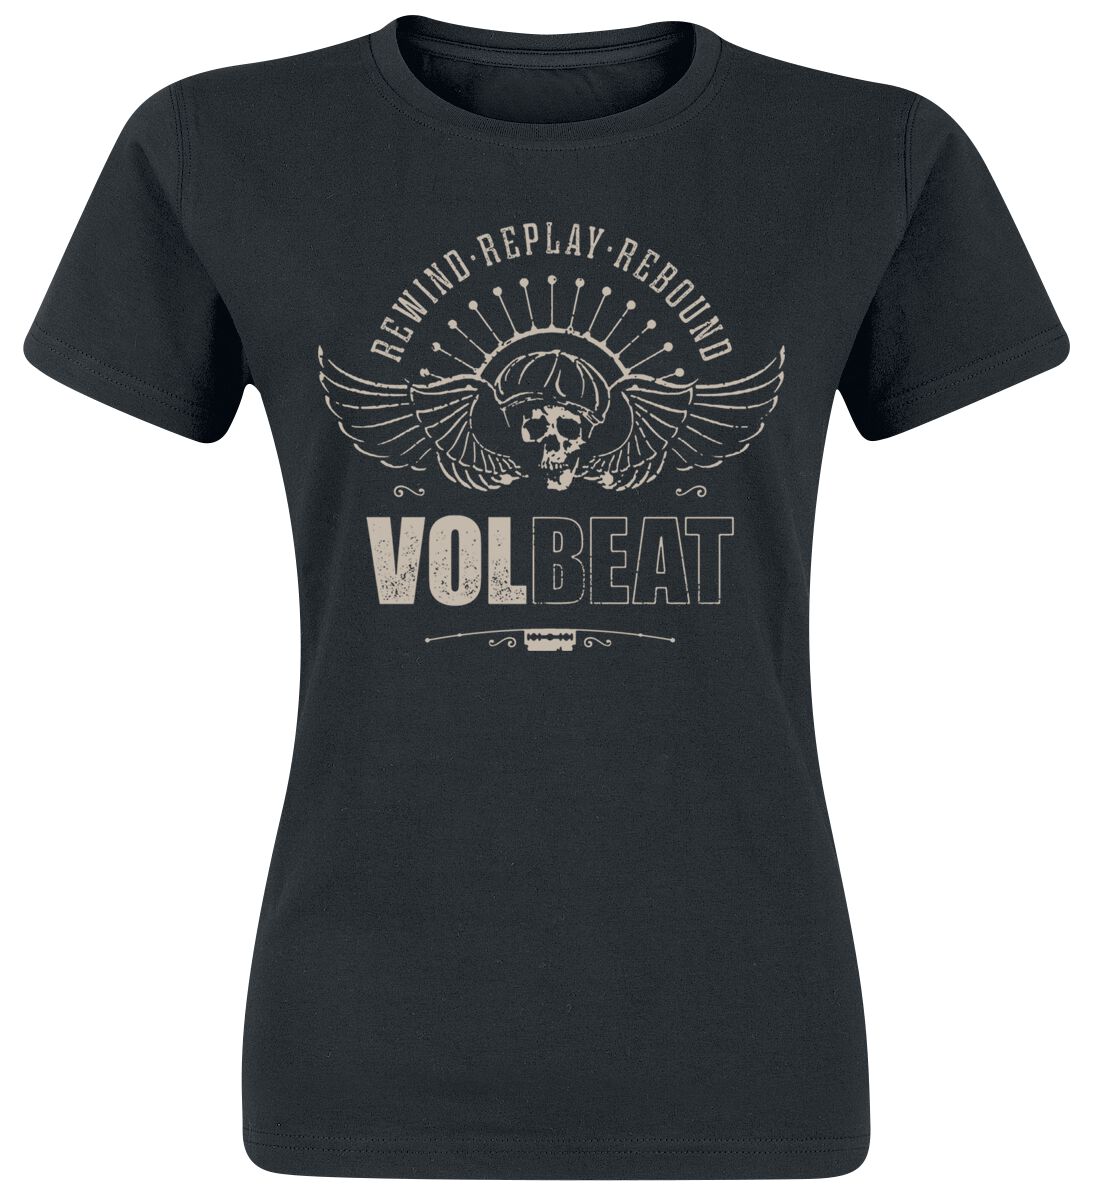 T-Shirt Manches courtes de Volbeat - Skullwing - Rewind, Replay, Rebound - S à 3XL - pour Femme - no